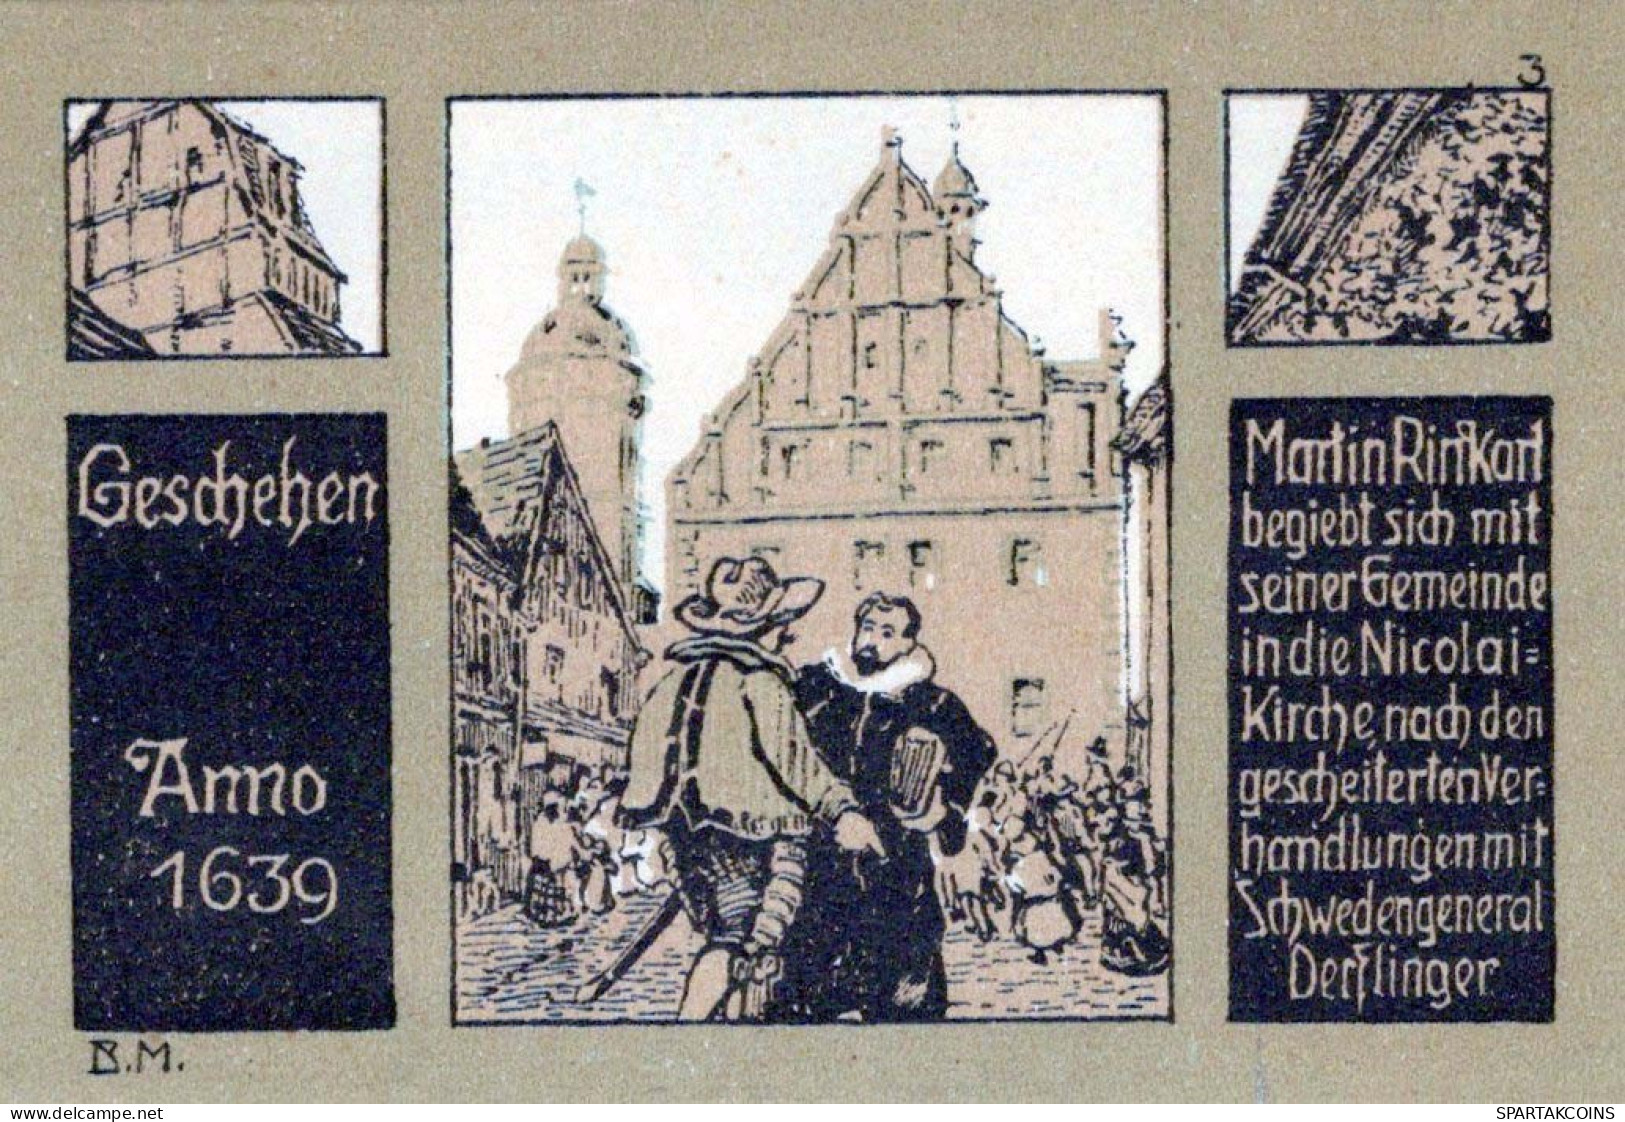 50 PFENNIG 1921 Stadt EILENBURG Saxony UNC DEUTSCHLAND Notgeld Banknote #PB072 - [11] Local Banknote Issues